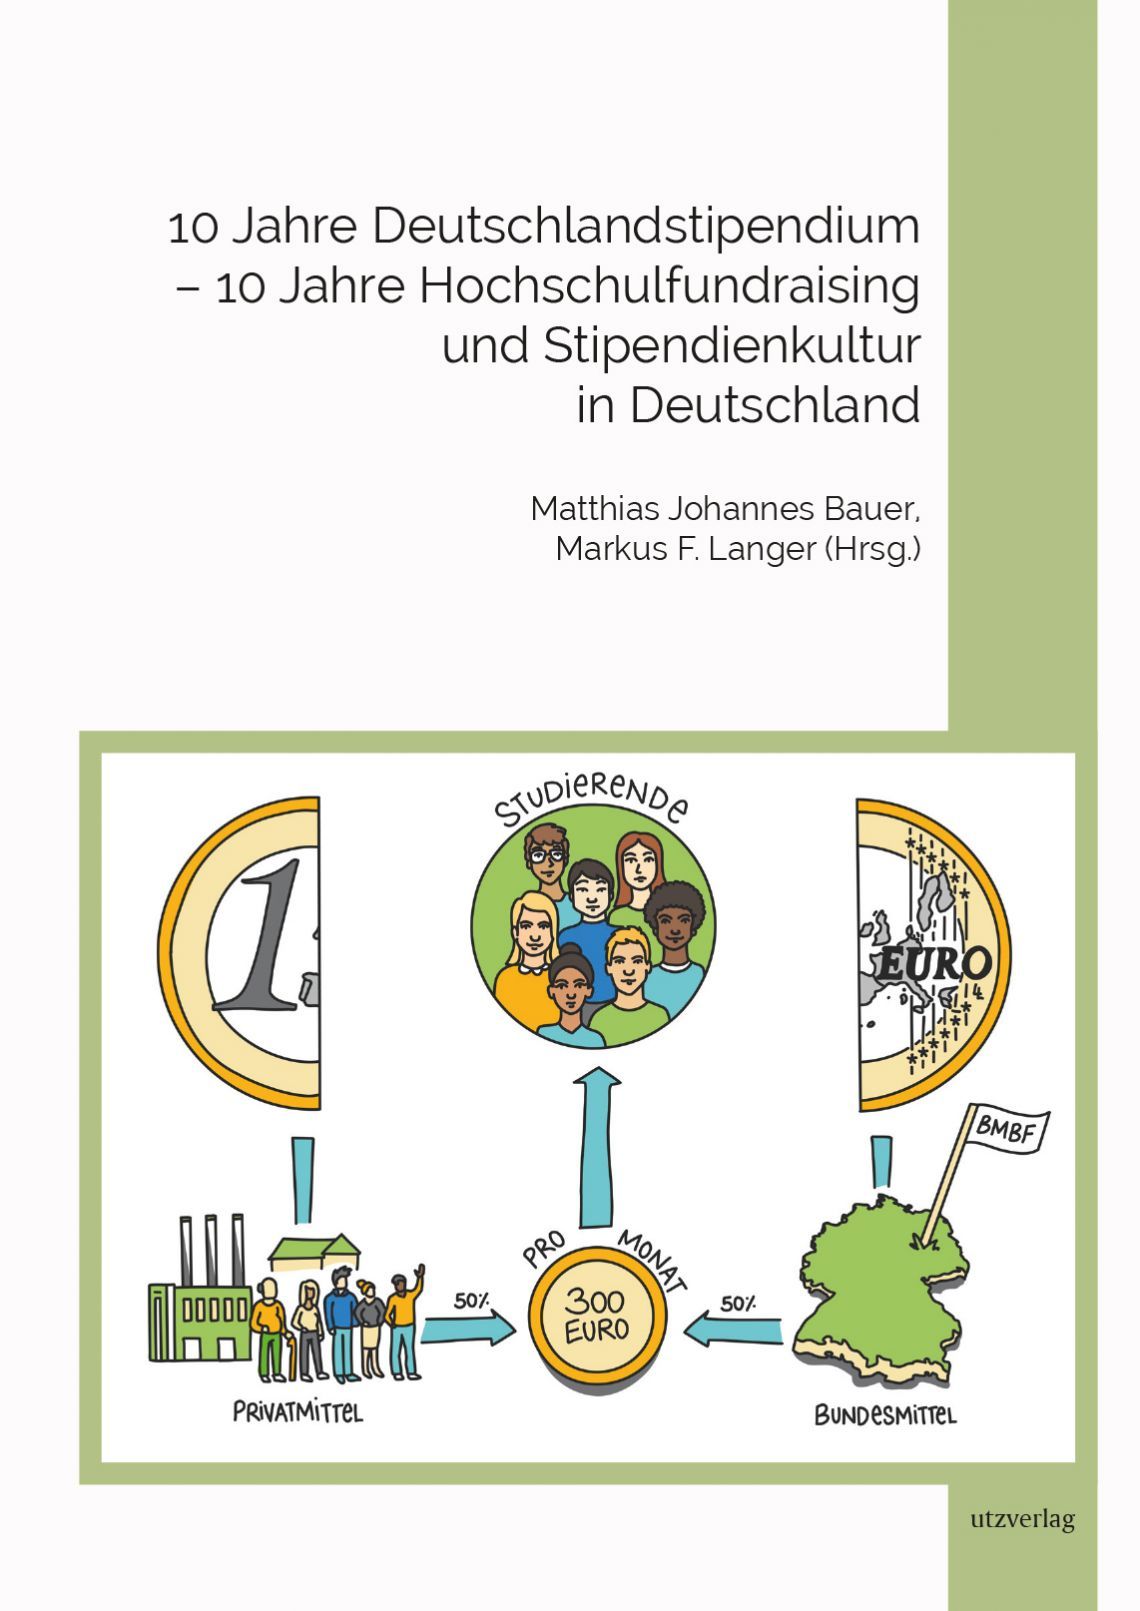 Bild zu Neues Buch: „10 Jahre Deutschlandstipendium – 10 Jahre Hochschulfundraising und Stipendienkultur in Deutschland“  